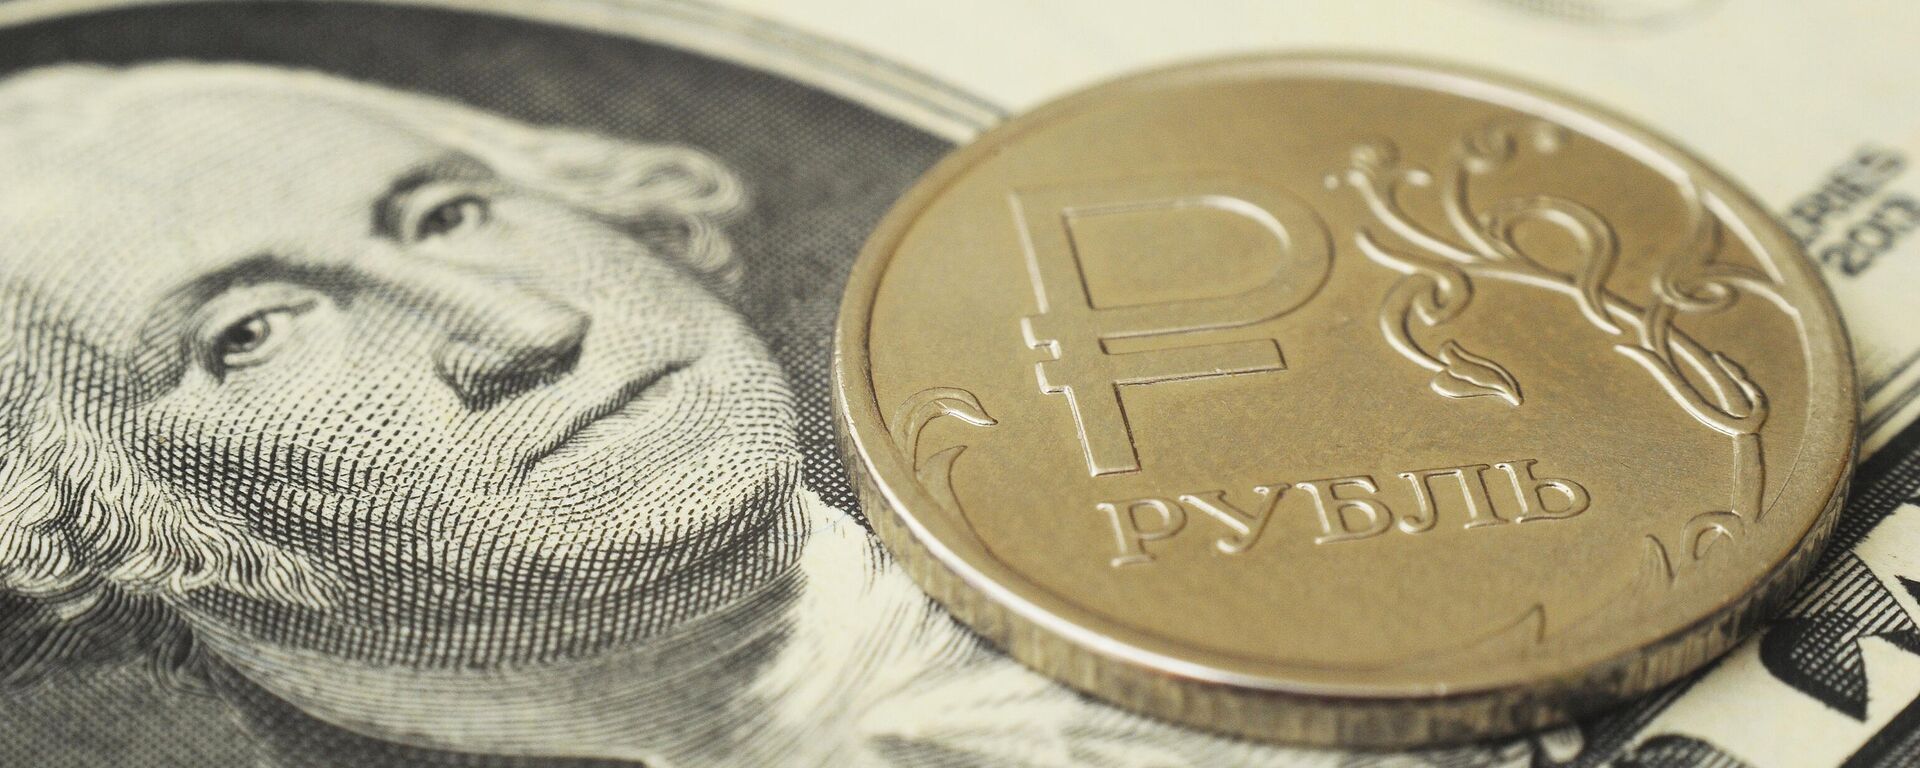 Монета номиналом один рубль на банкноте один доллар США. - Sputnik Абхазия, 1920, 24.01.2023